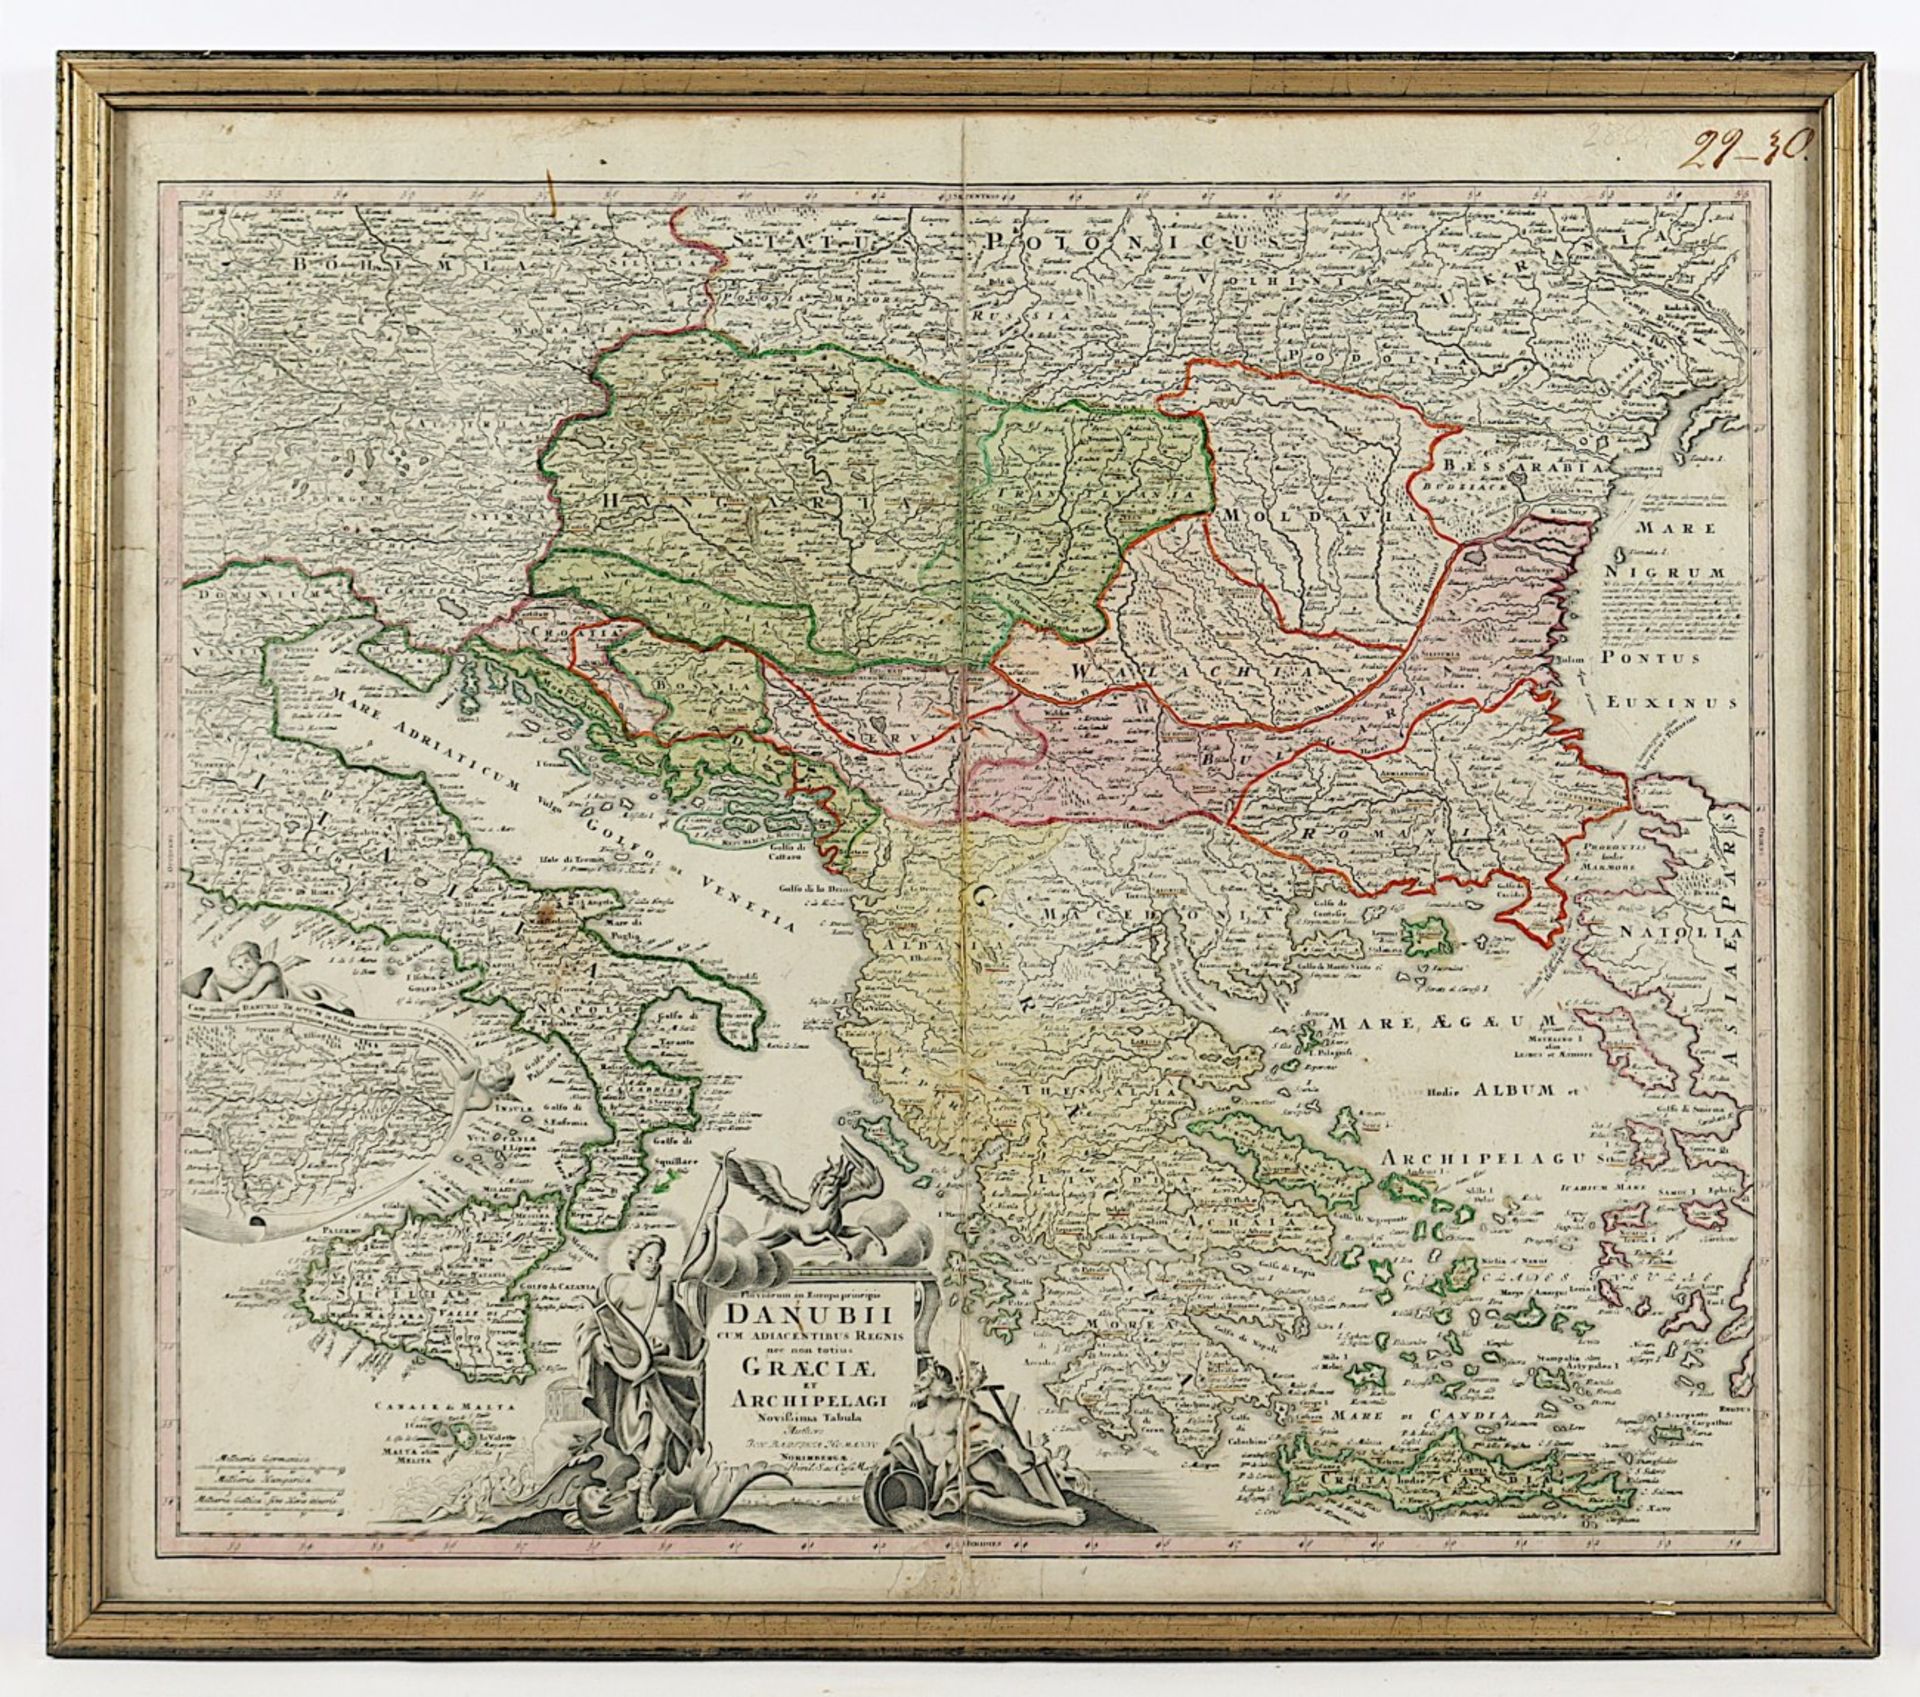 GRIECHENLAND, "Danubii com adiacentibus regnis.. Graeciae..", kolorierter Kupferstich, 47 x 57,5, e